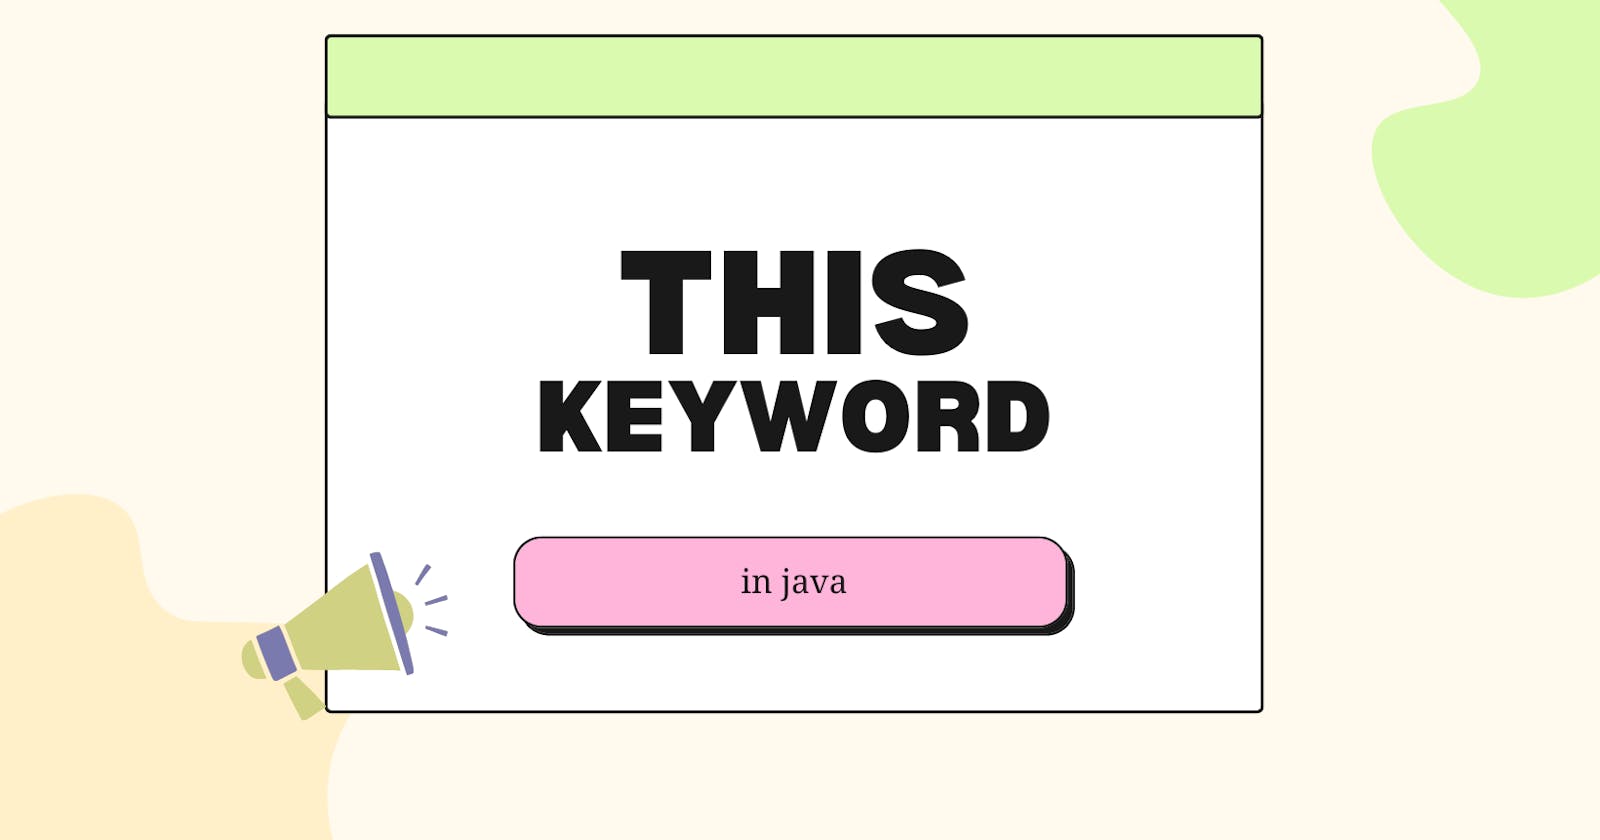 This keyword in Java